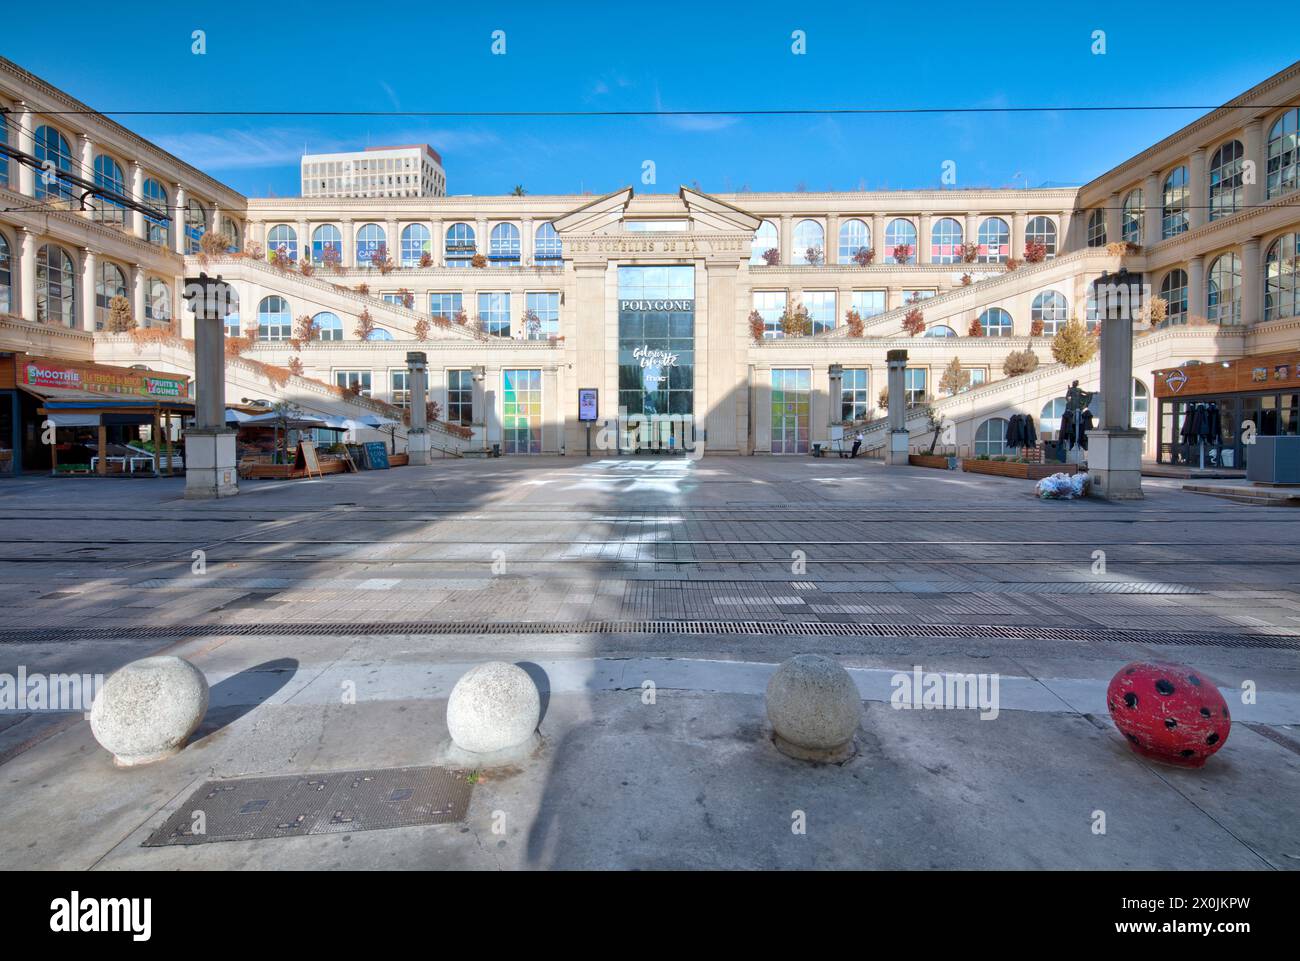 Polygone, Einkaufszentrum, Antigone, Viertel, Blick auf das Haus, Fassade, Architekt Ricardo Bofil, Montpellier, Herault, Frankreich, Stockfoto